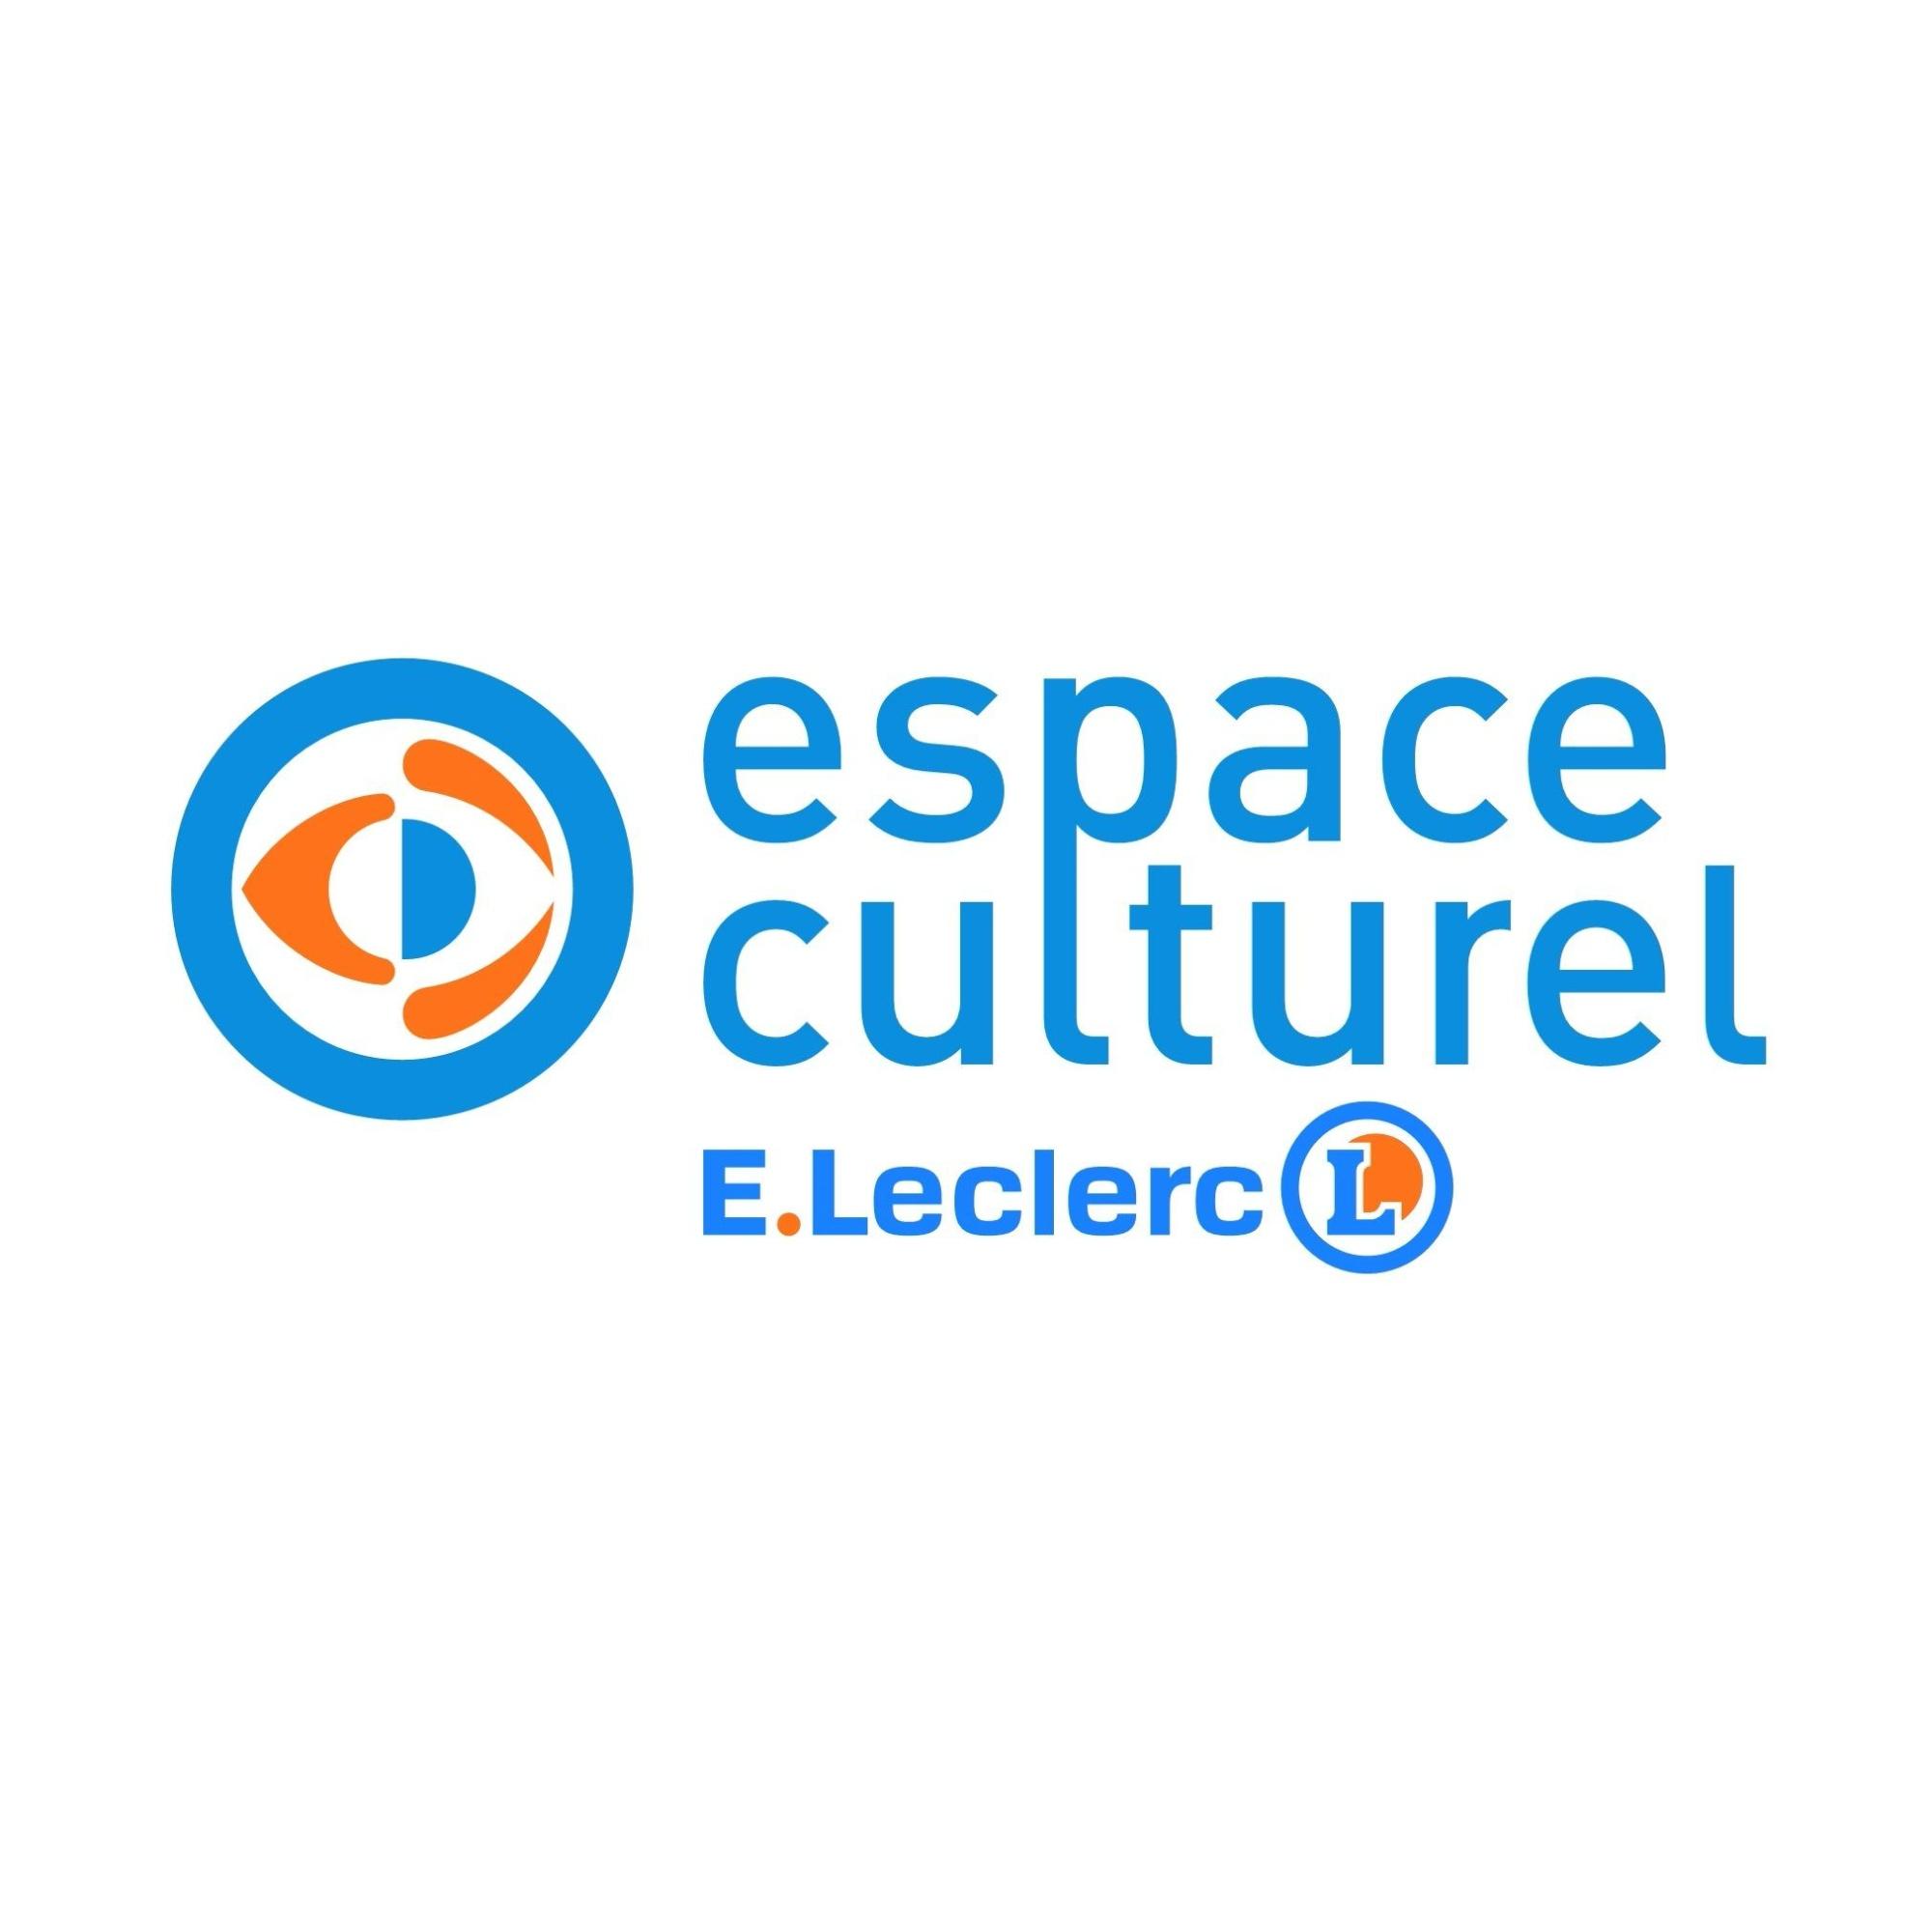 E.leclerc Espace Culturel Quimper